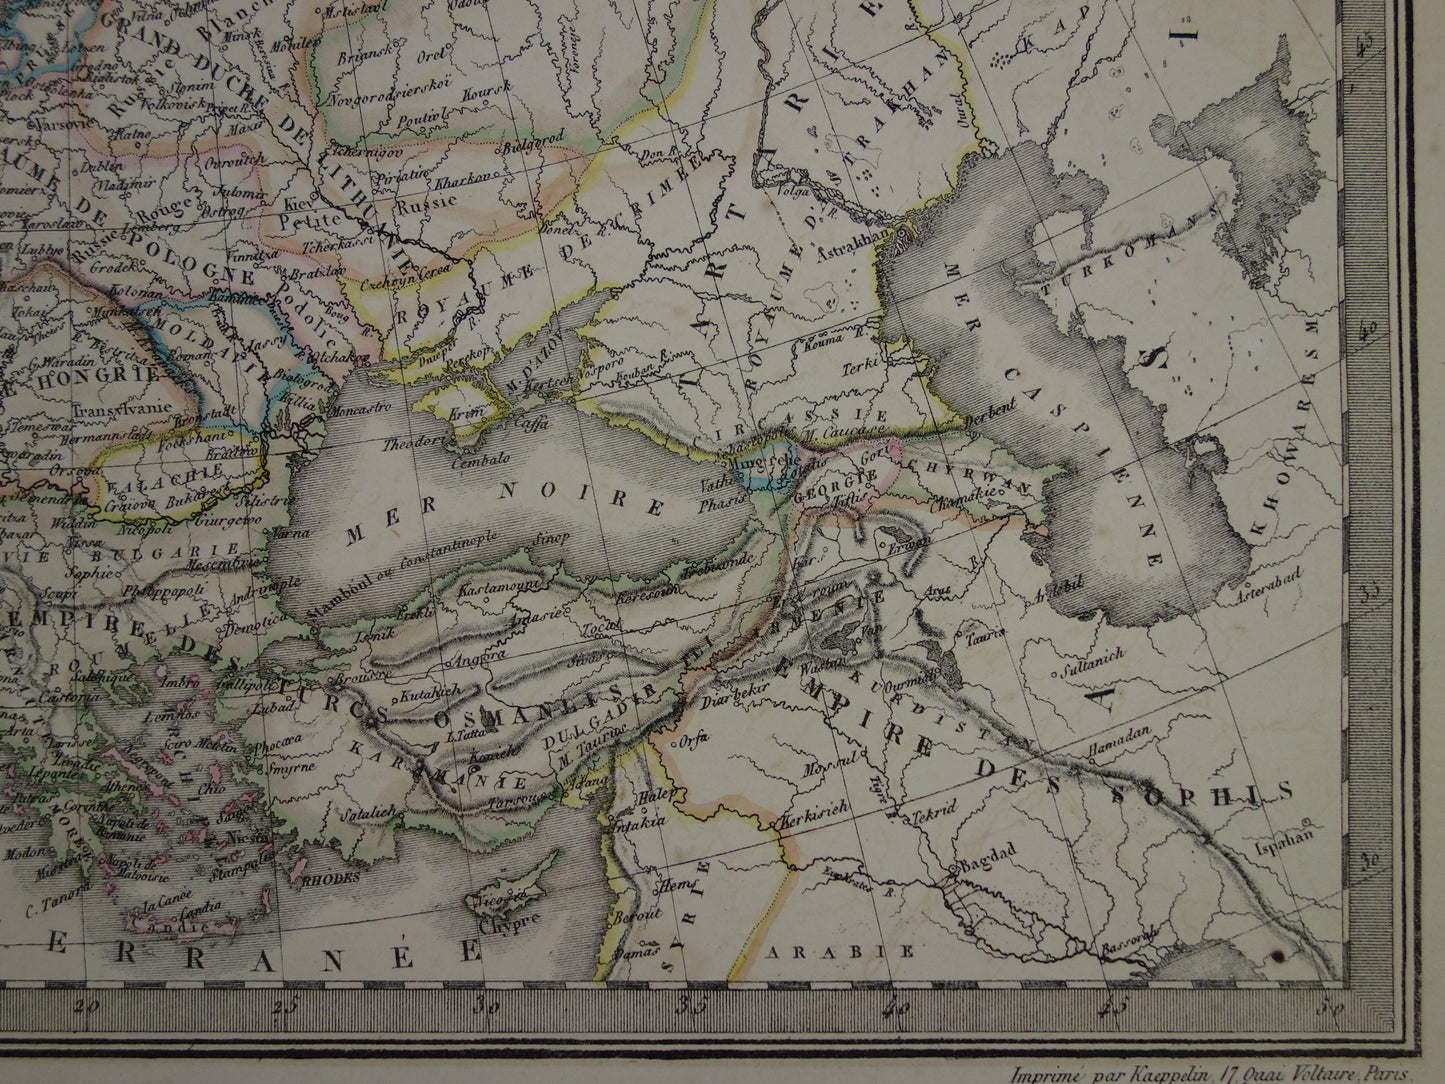 Antieke kaart van Europa ten tijde Karel de Grote in het jaar 800 en Keizer Karel V in jaar 1500 - originele oude landkaart uit 1851